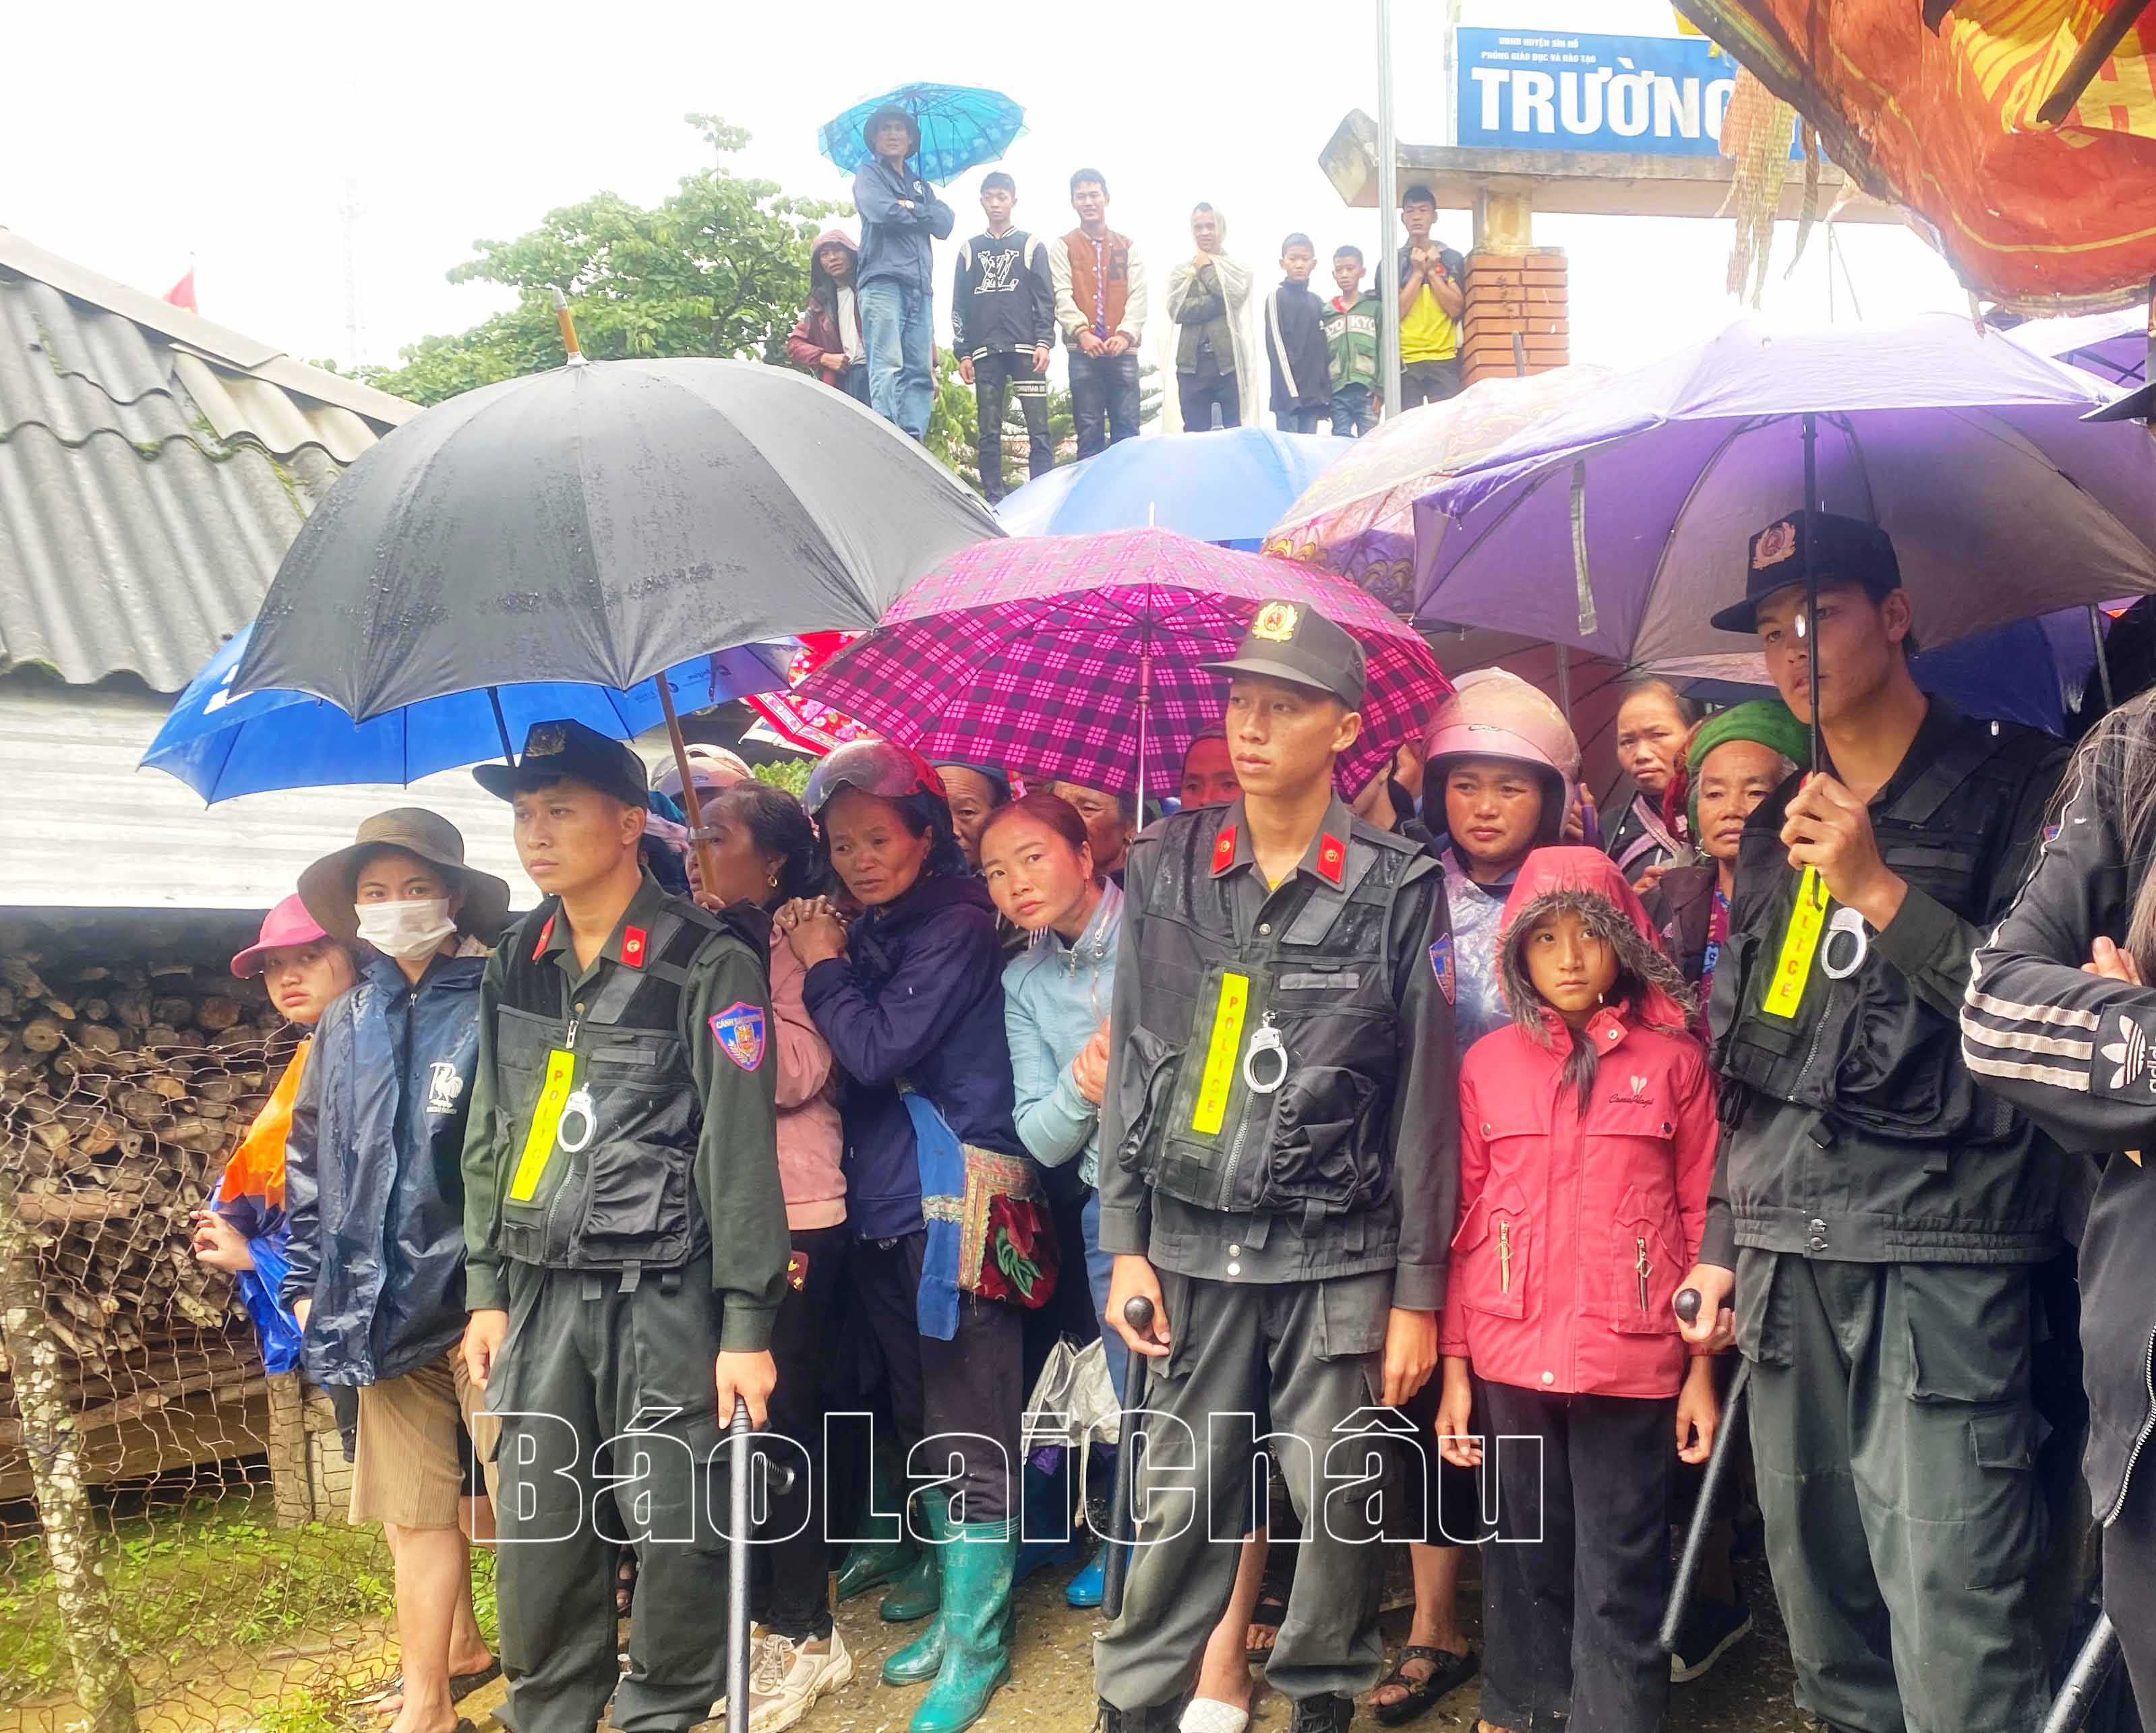 Hình ảnh người dân đứng che mưa cho các chiến sỹ cảnh sát làm nhiệm vụ trong Chuyên án 0723G  thực sự xúc động.